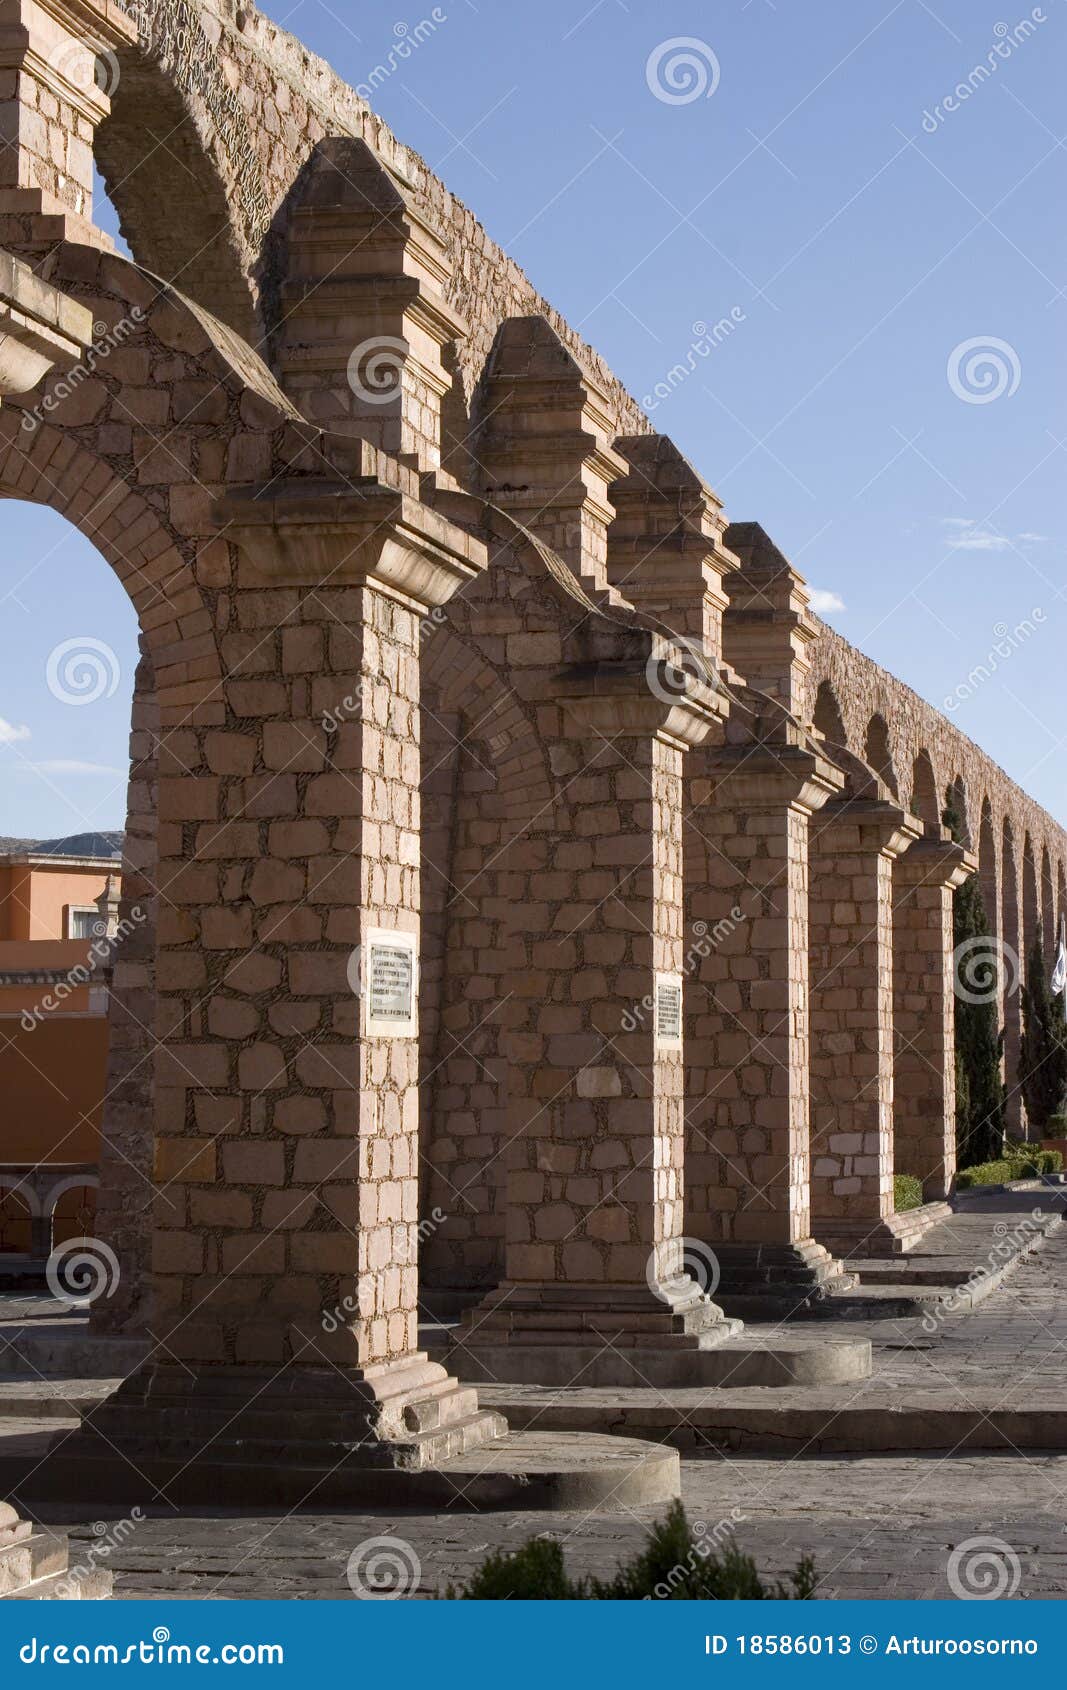 the aqueduct of zacatecas